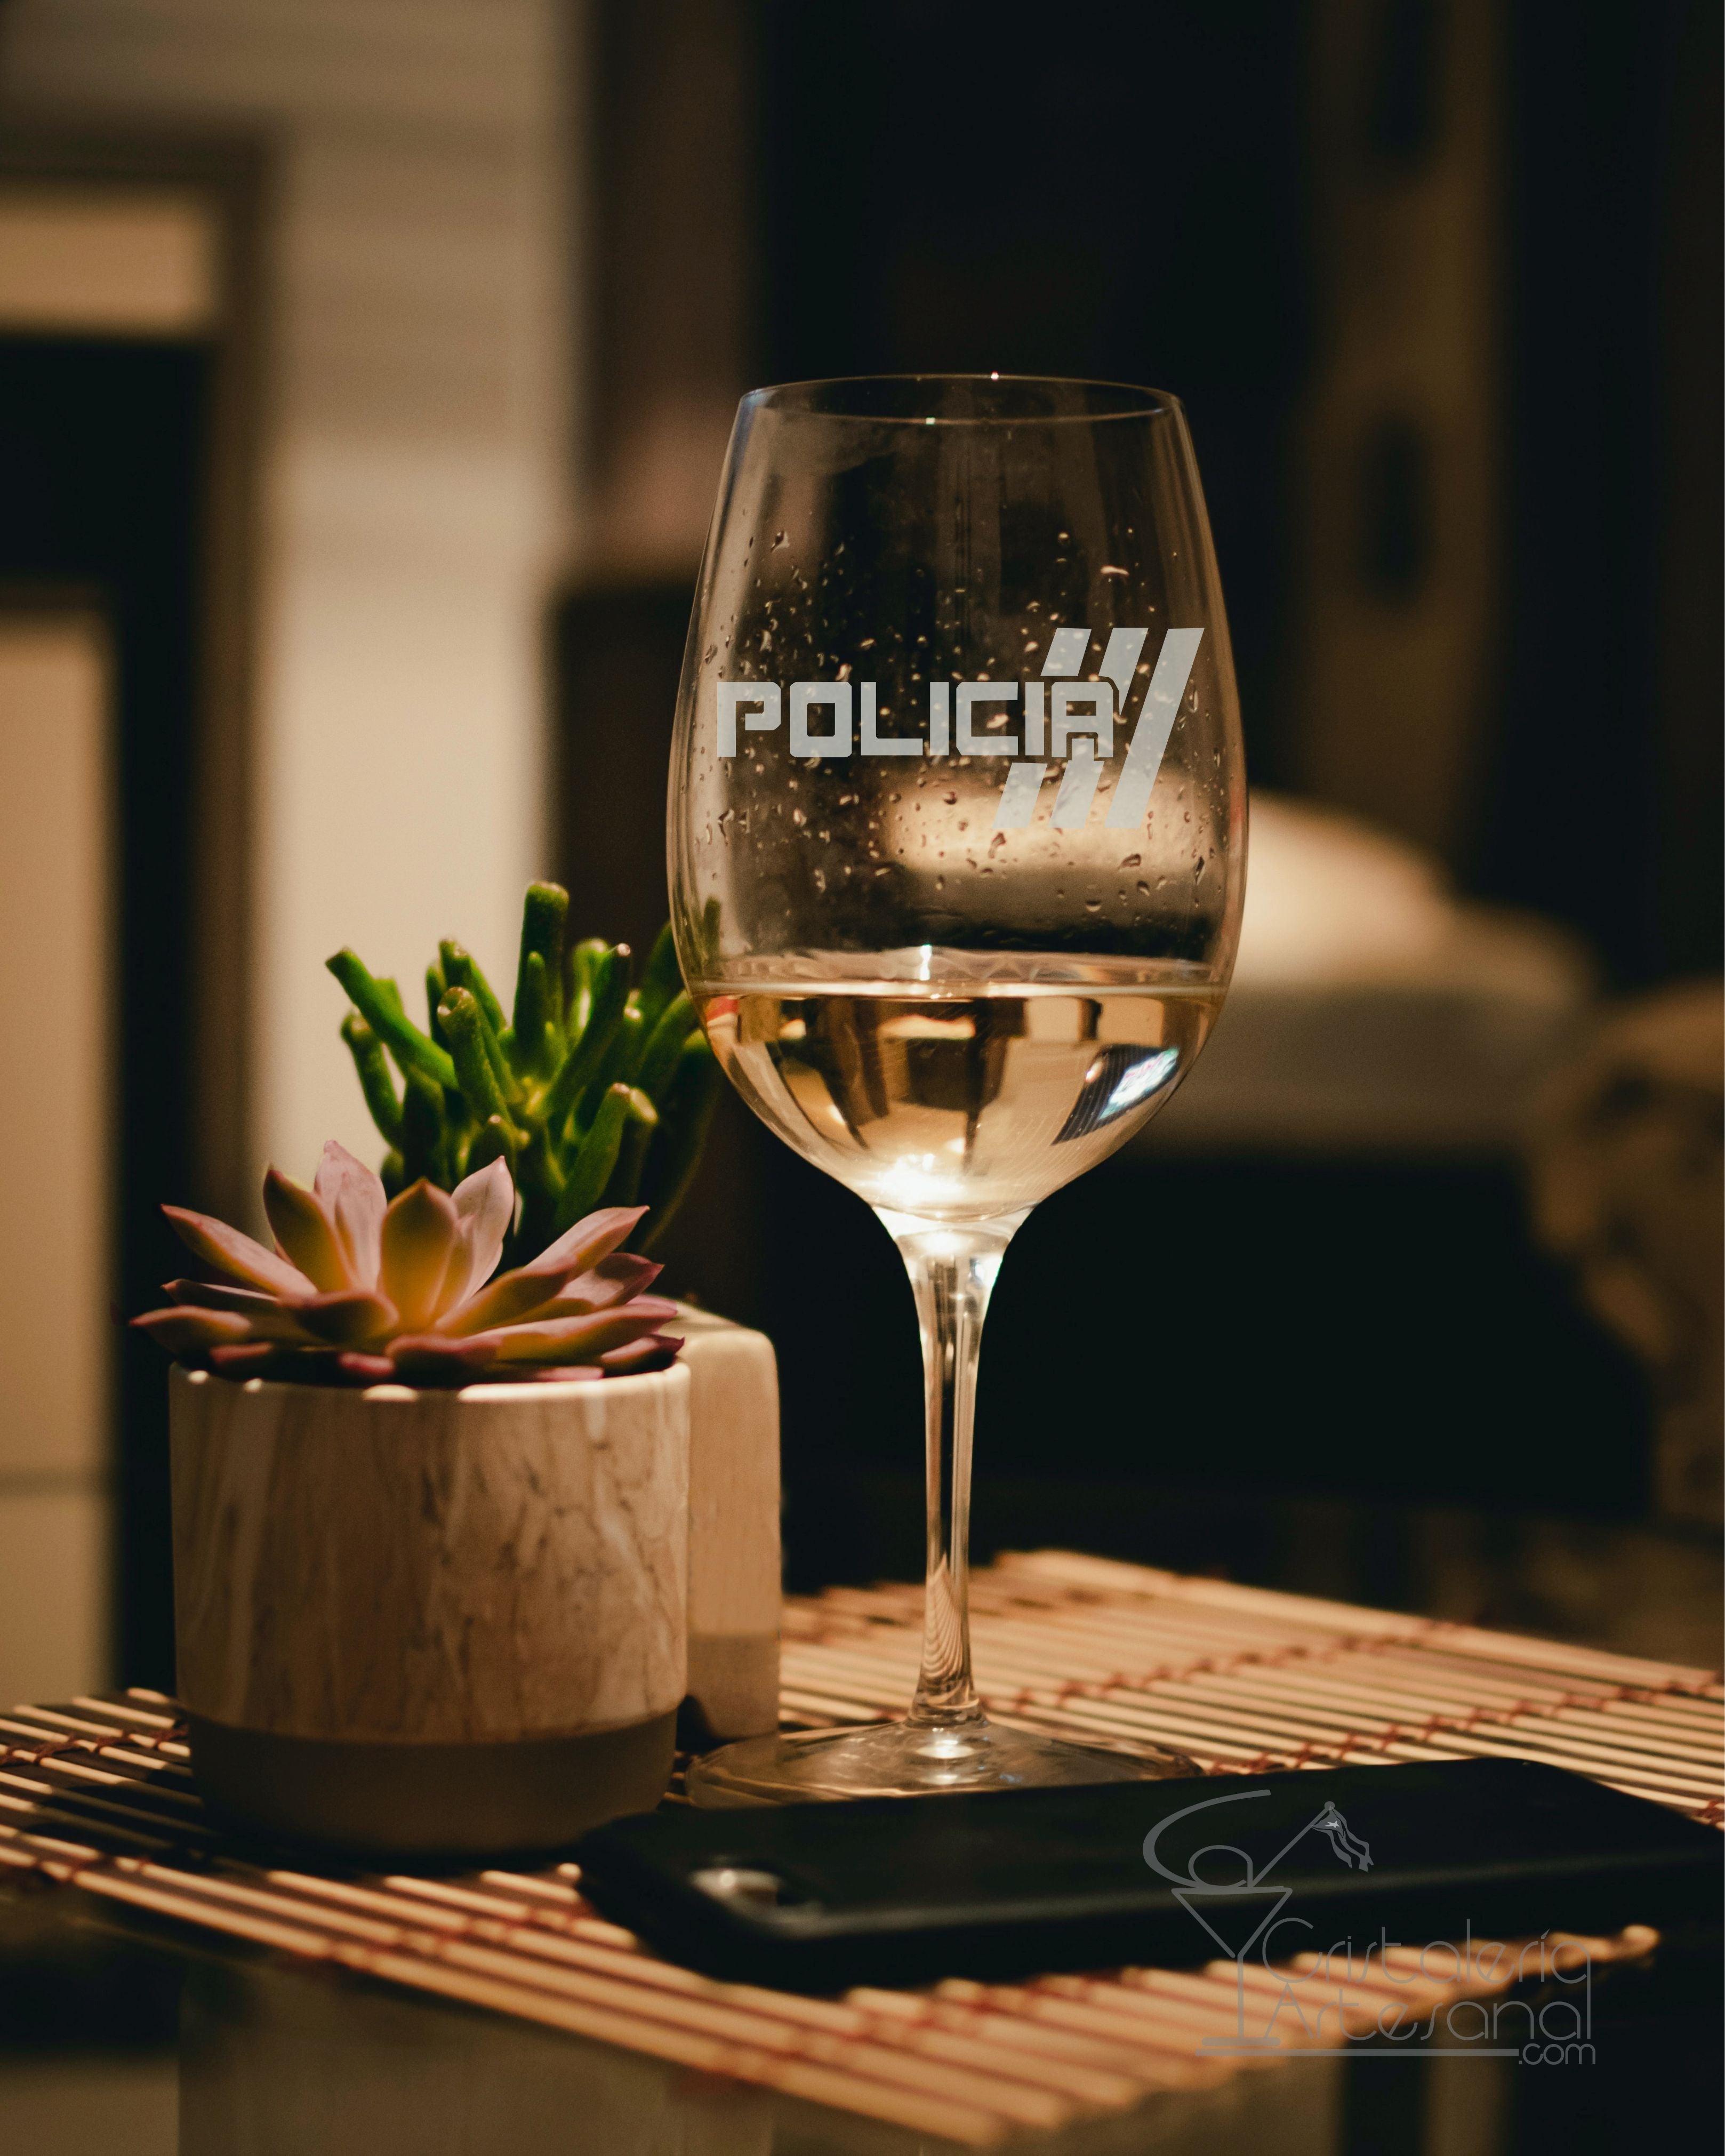 Policía Storsint Wine Glass